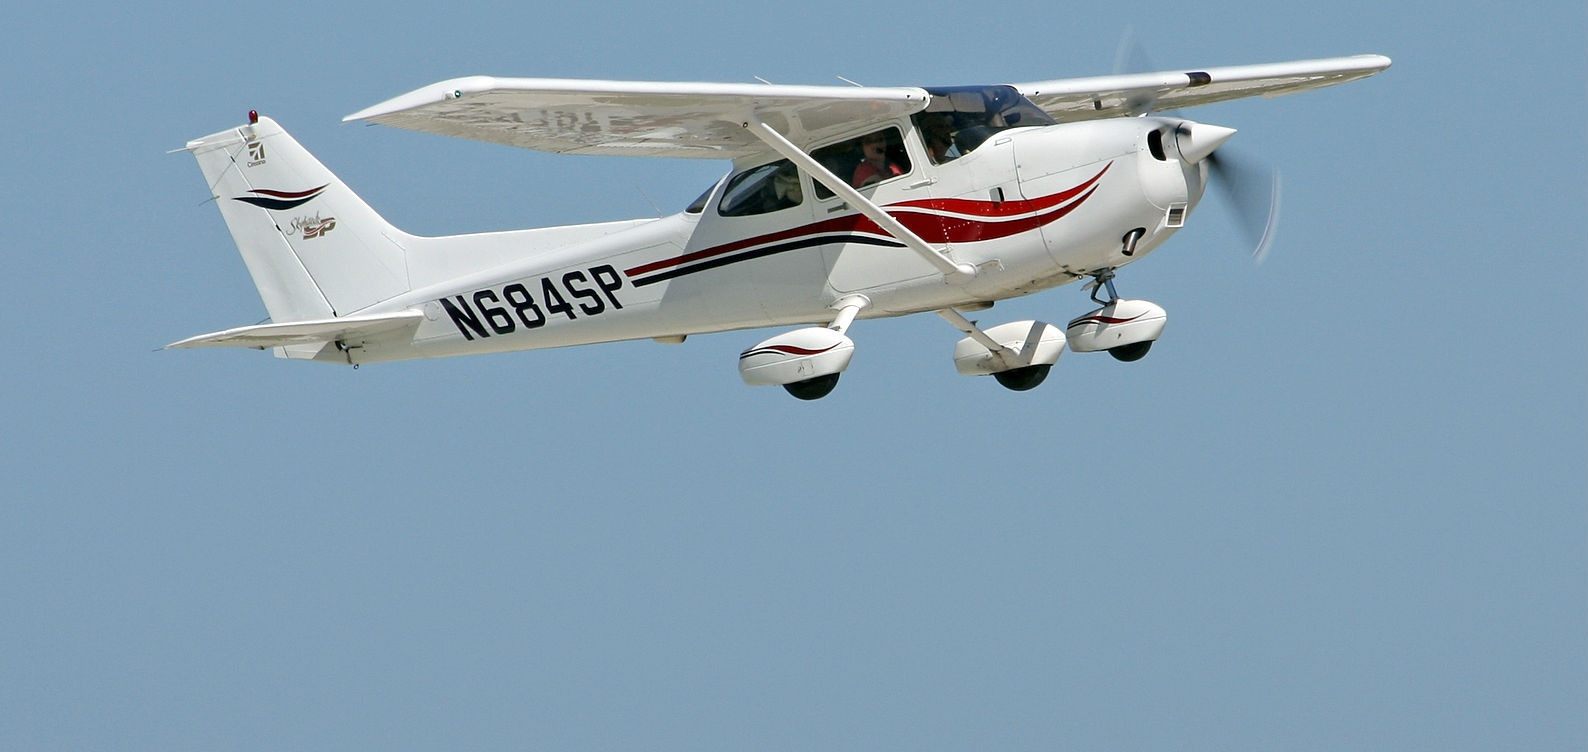 A Cessna Skyhawk flying in clear skies